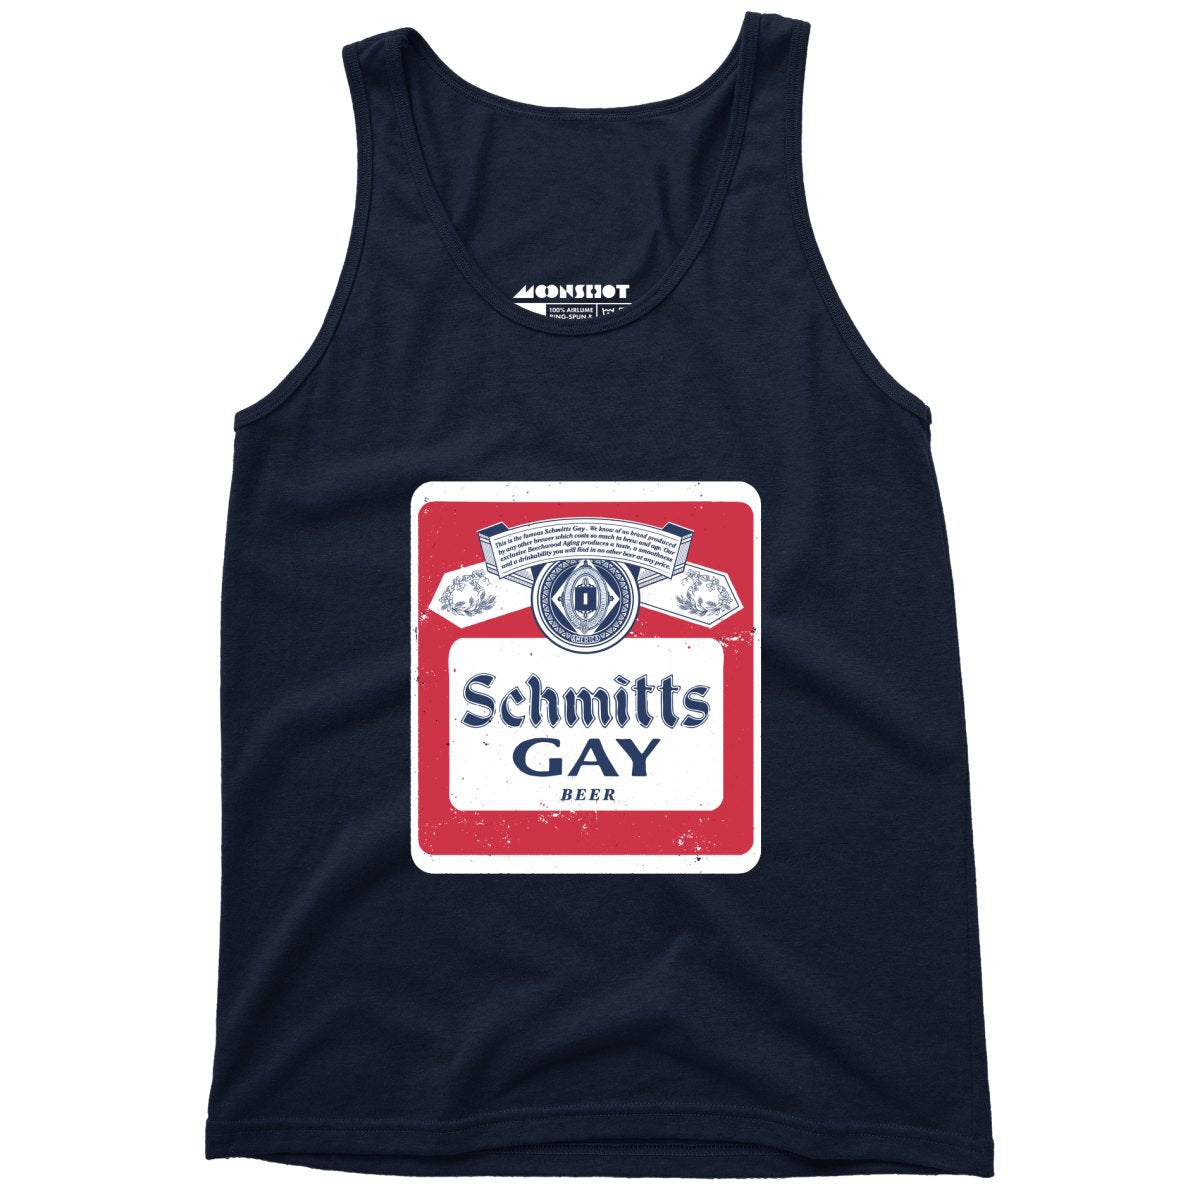 Schmitts Gay Beer - Unisex Tank Top